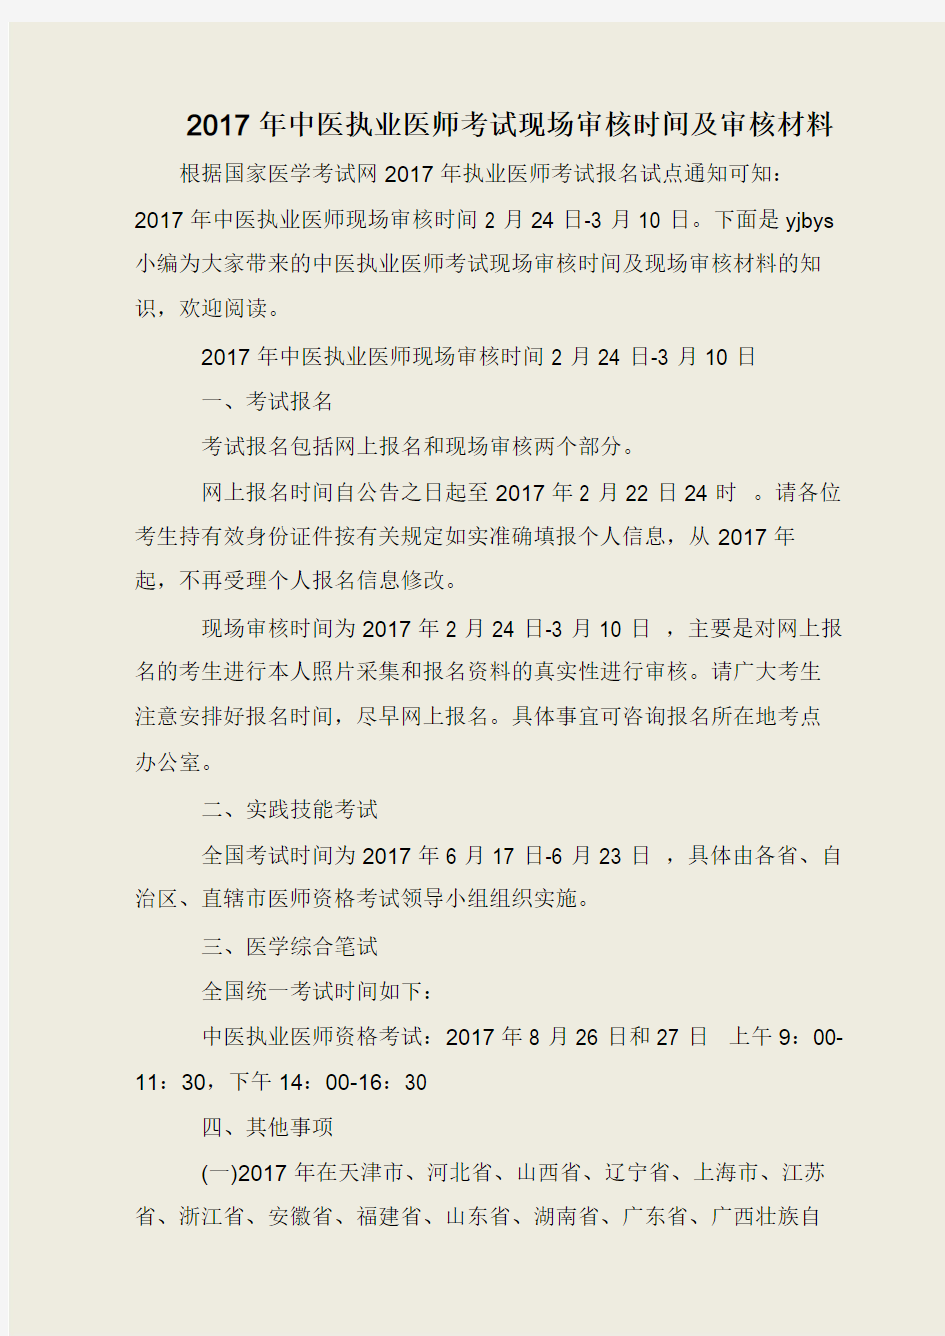 2017年中医执业医师考试现场审核时间及审核材料